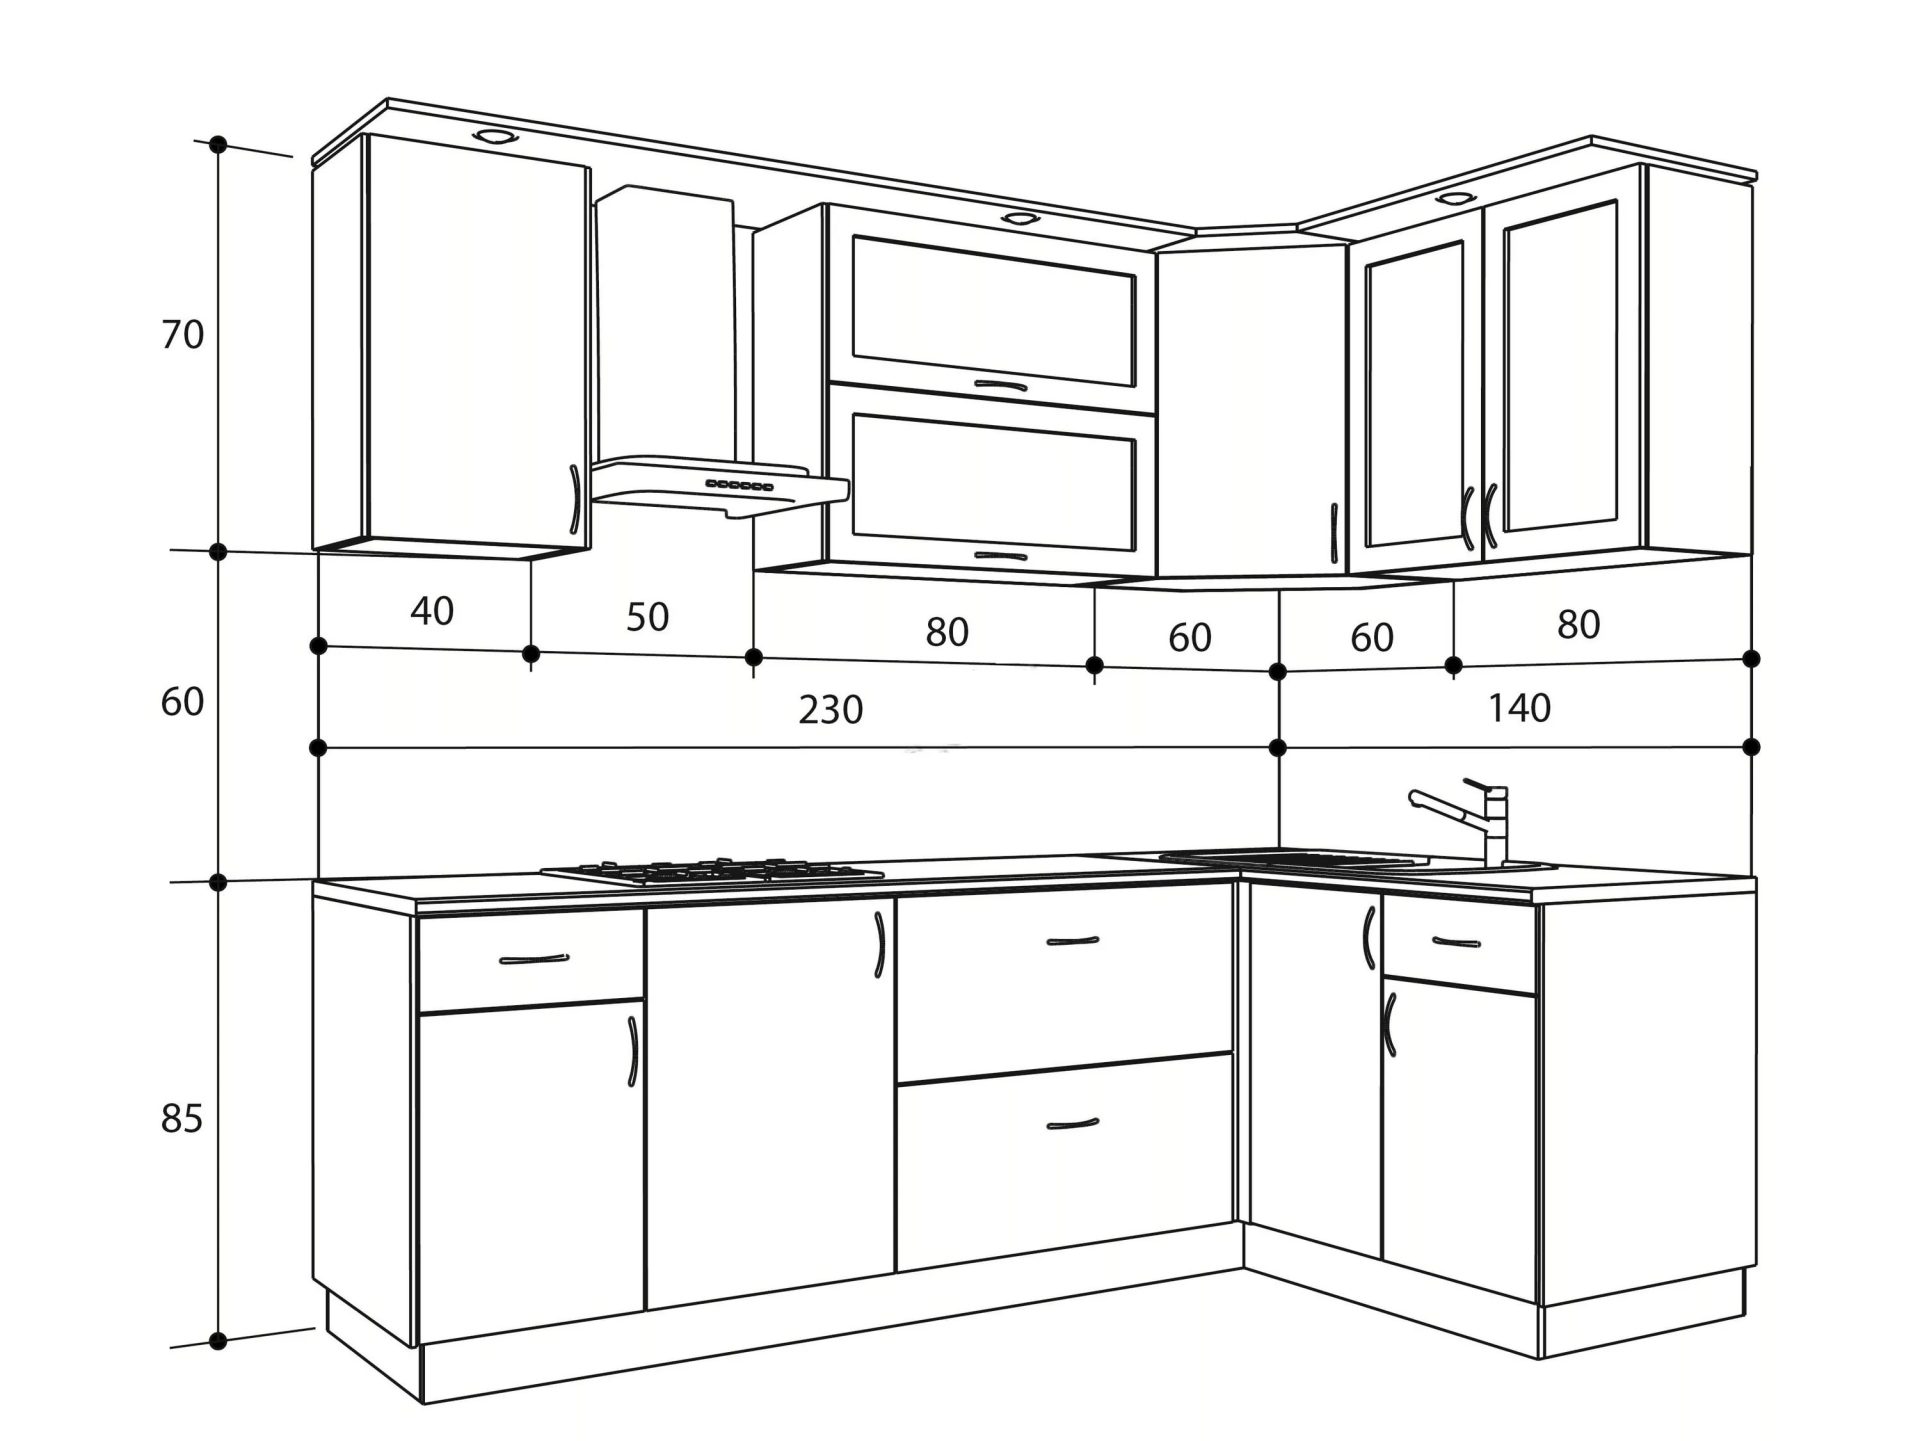 Размеры кухонной столешницы стандартные